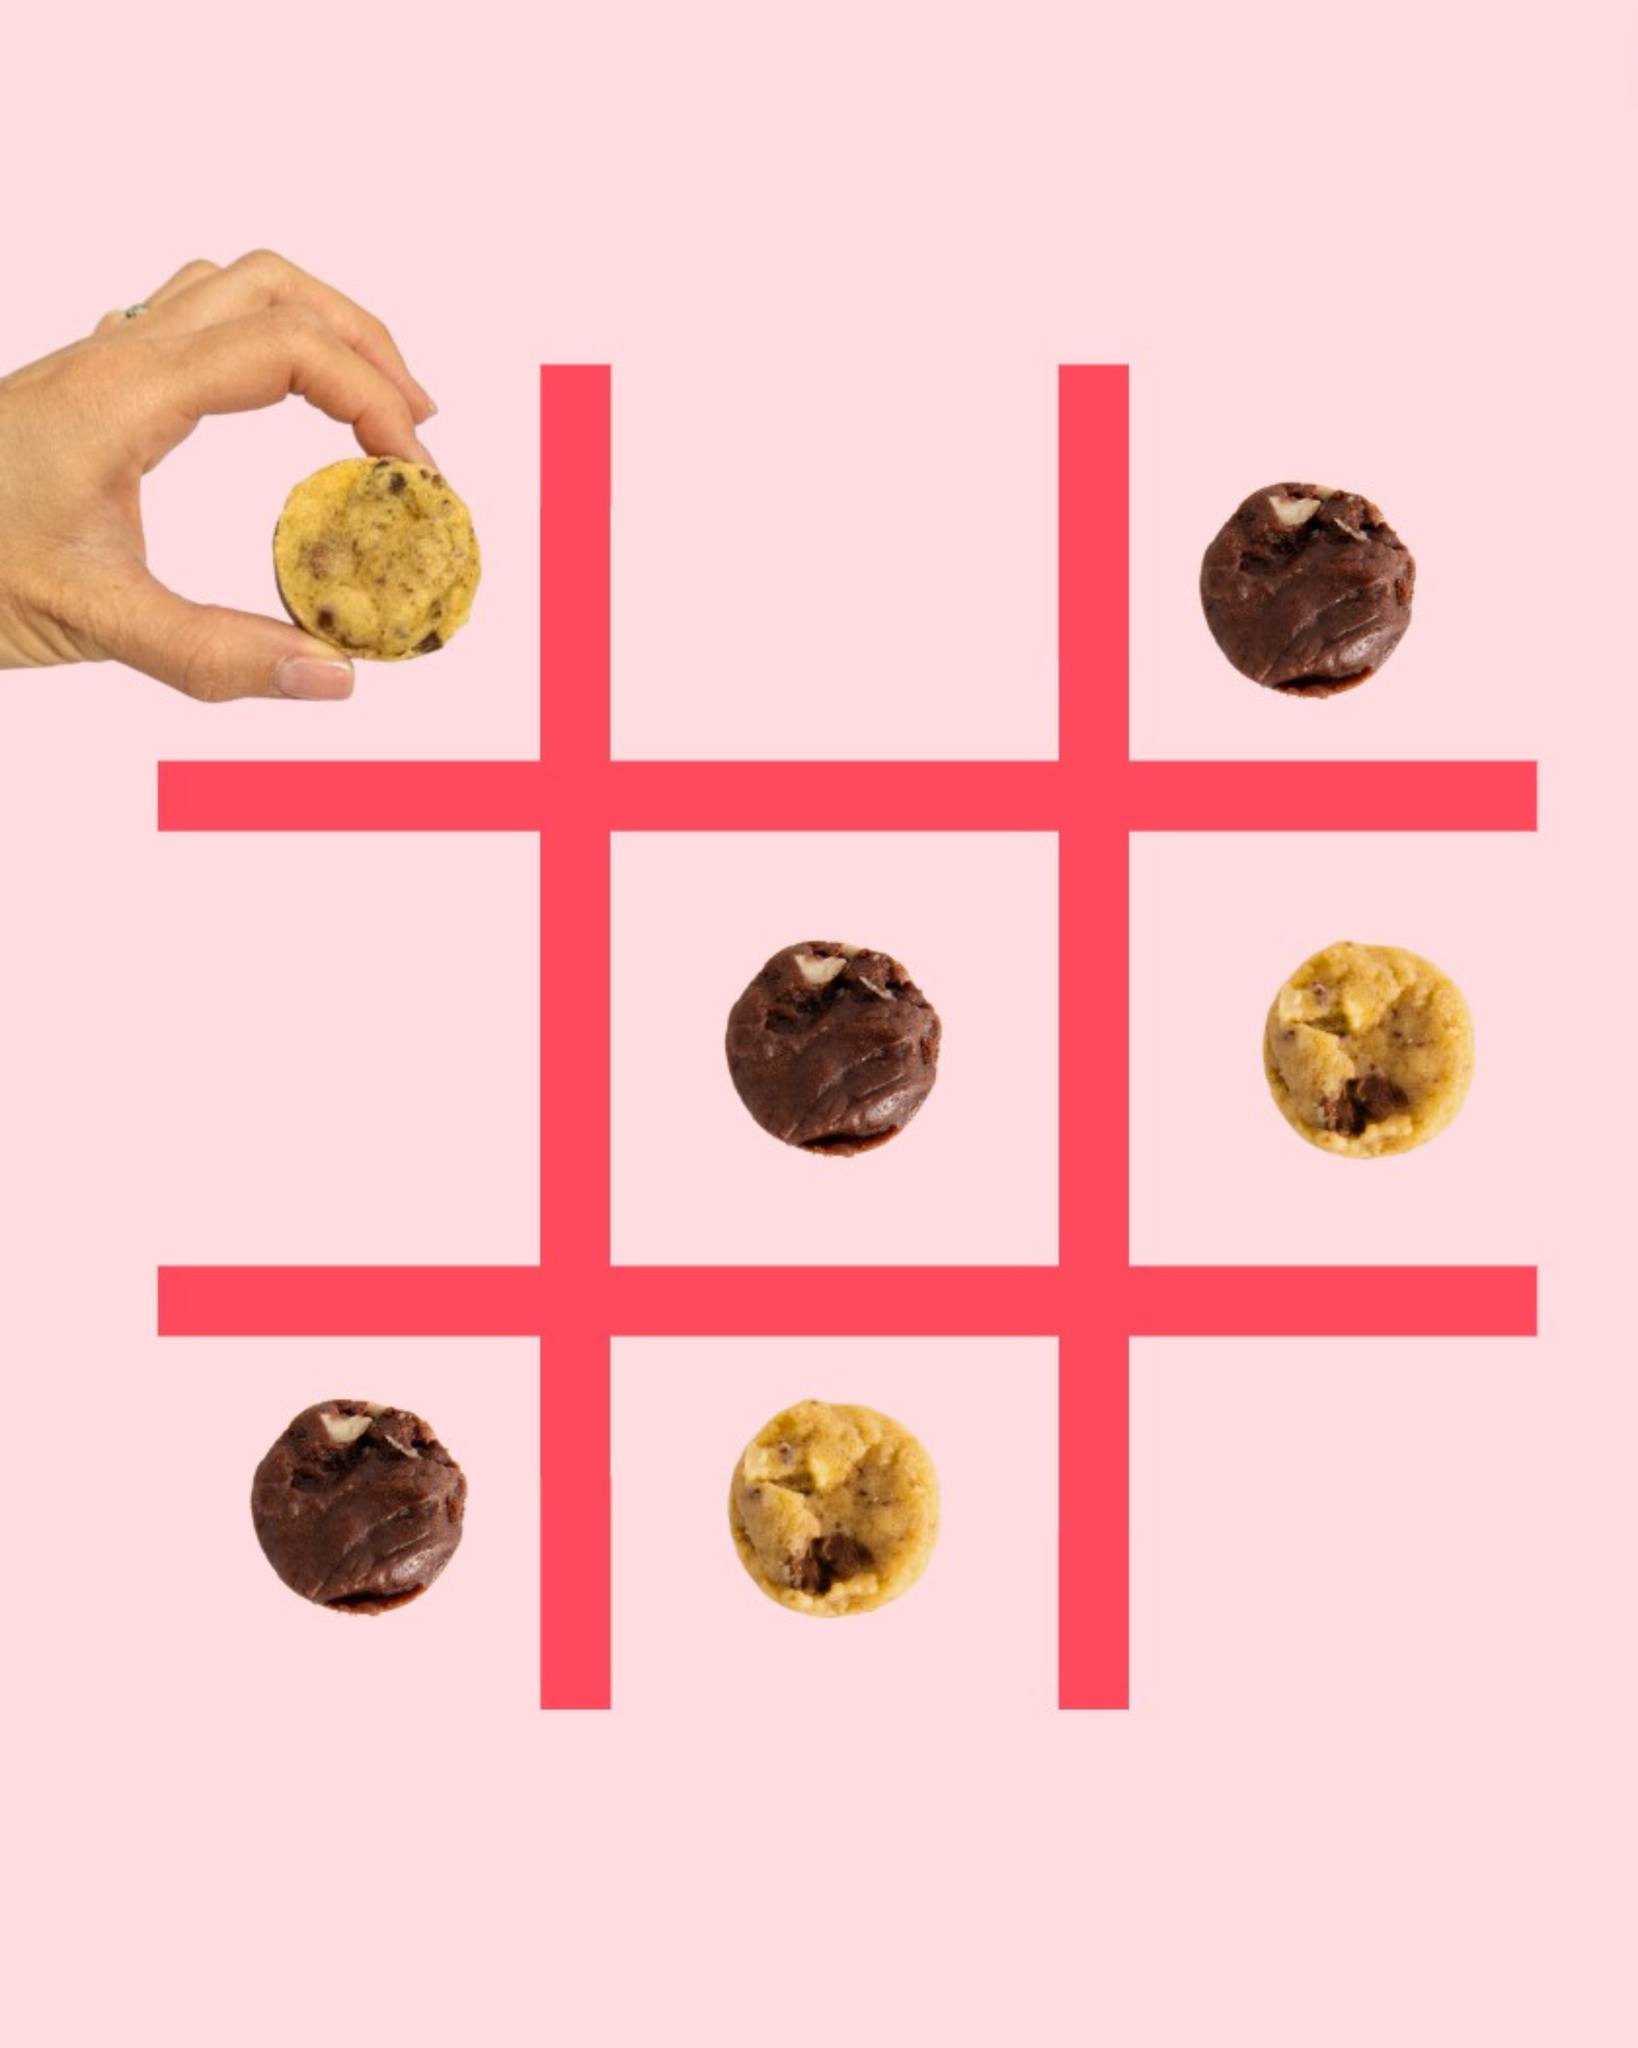 Qui veut jouer au morpion gourmand ? Le gagnant remporte... un délicieux cookie bien sûr ! ✖️⭕

🍪 Faits maison à Gémenos (13)
📍Disponibles dans plusieurs points de vente
💌 Plus d’infos sur notre site web (lien dans notre bio)

#CookiesGiraudon #Bonheur #CookiesAvecAmour #GourmandiseAuthentique #homemadewithlove #CookiesArtisanaux #FaitAvecAmour #Gémenos #CuisineArtisanale #marseille #MadeInFrance